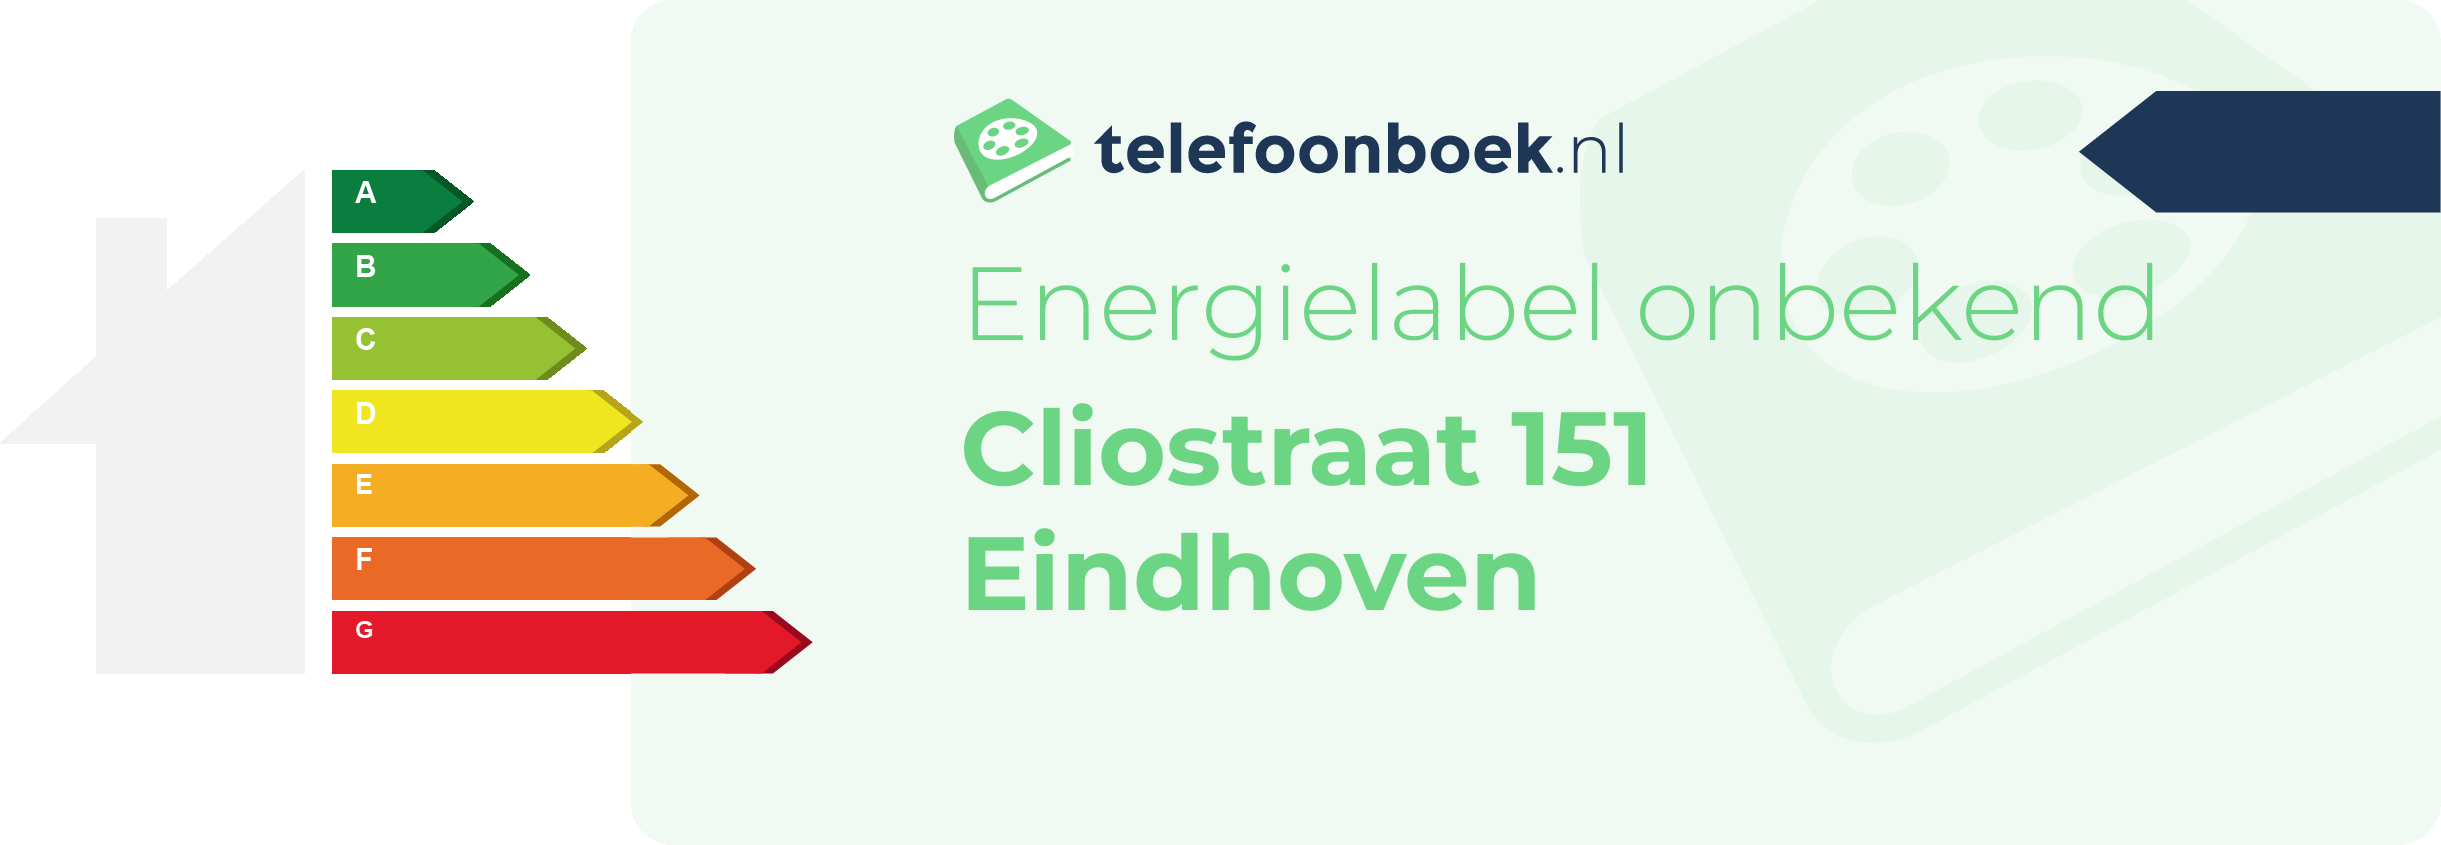 Energielabel Cliostraat 151 Eindhoven